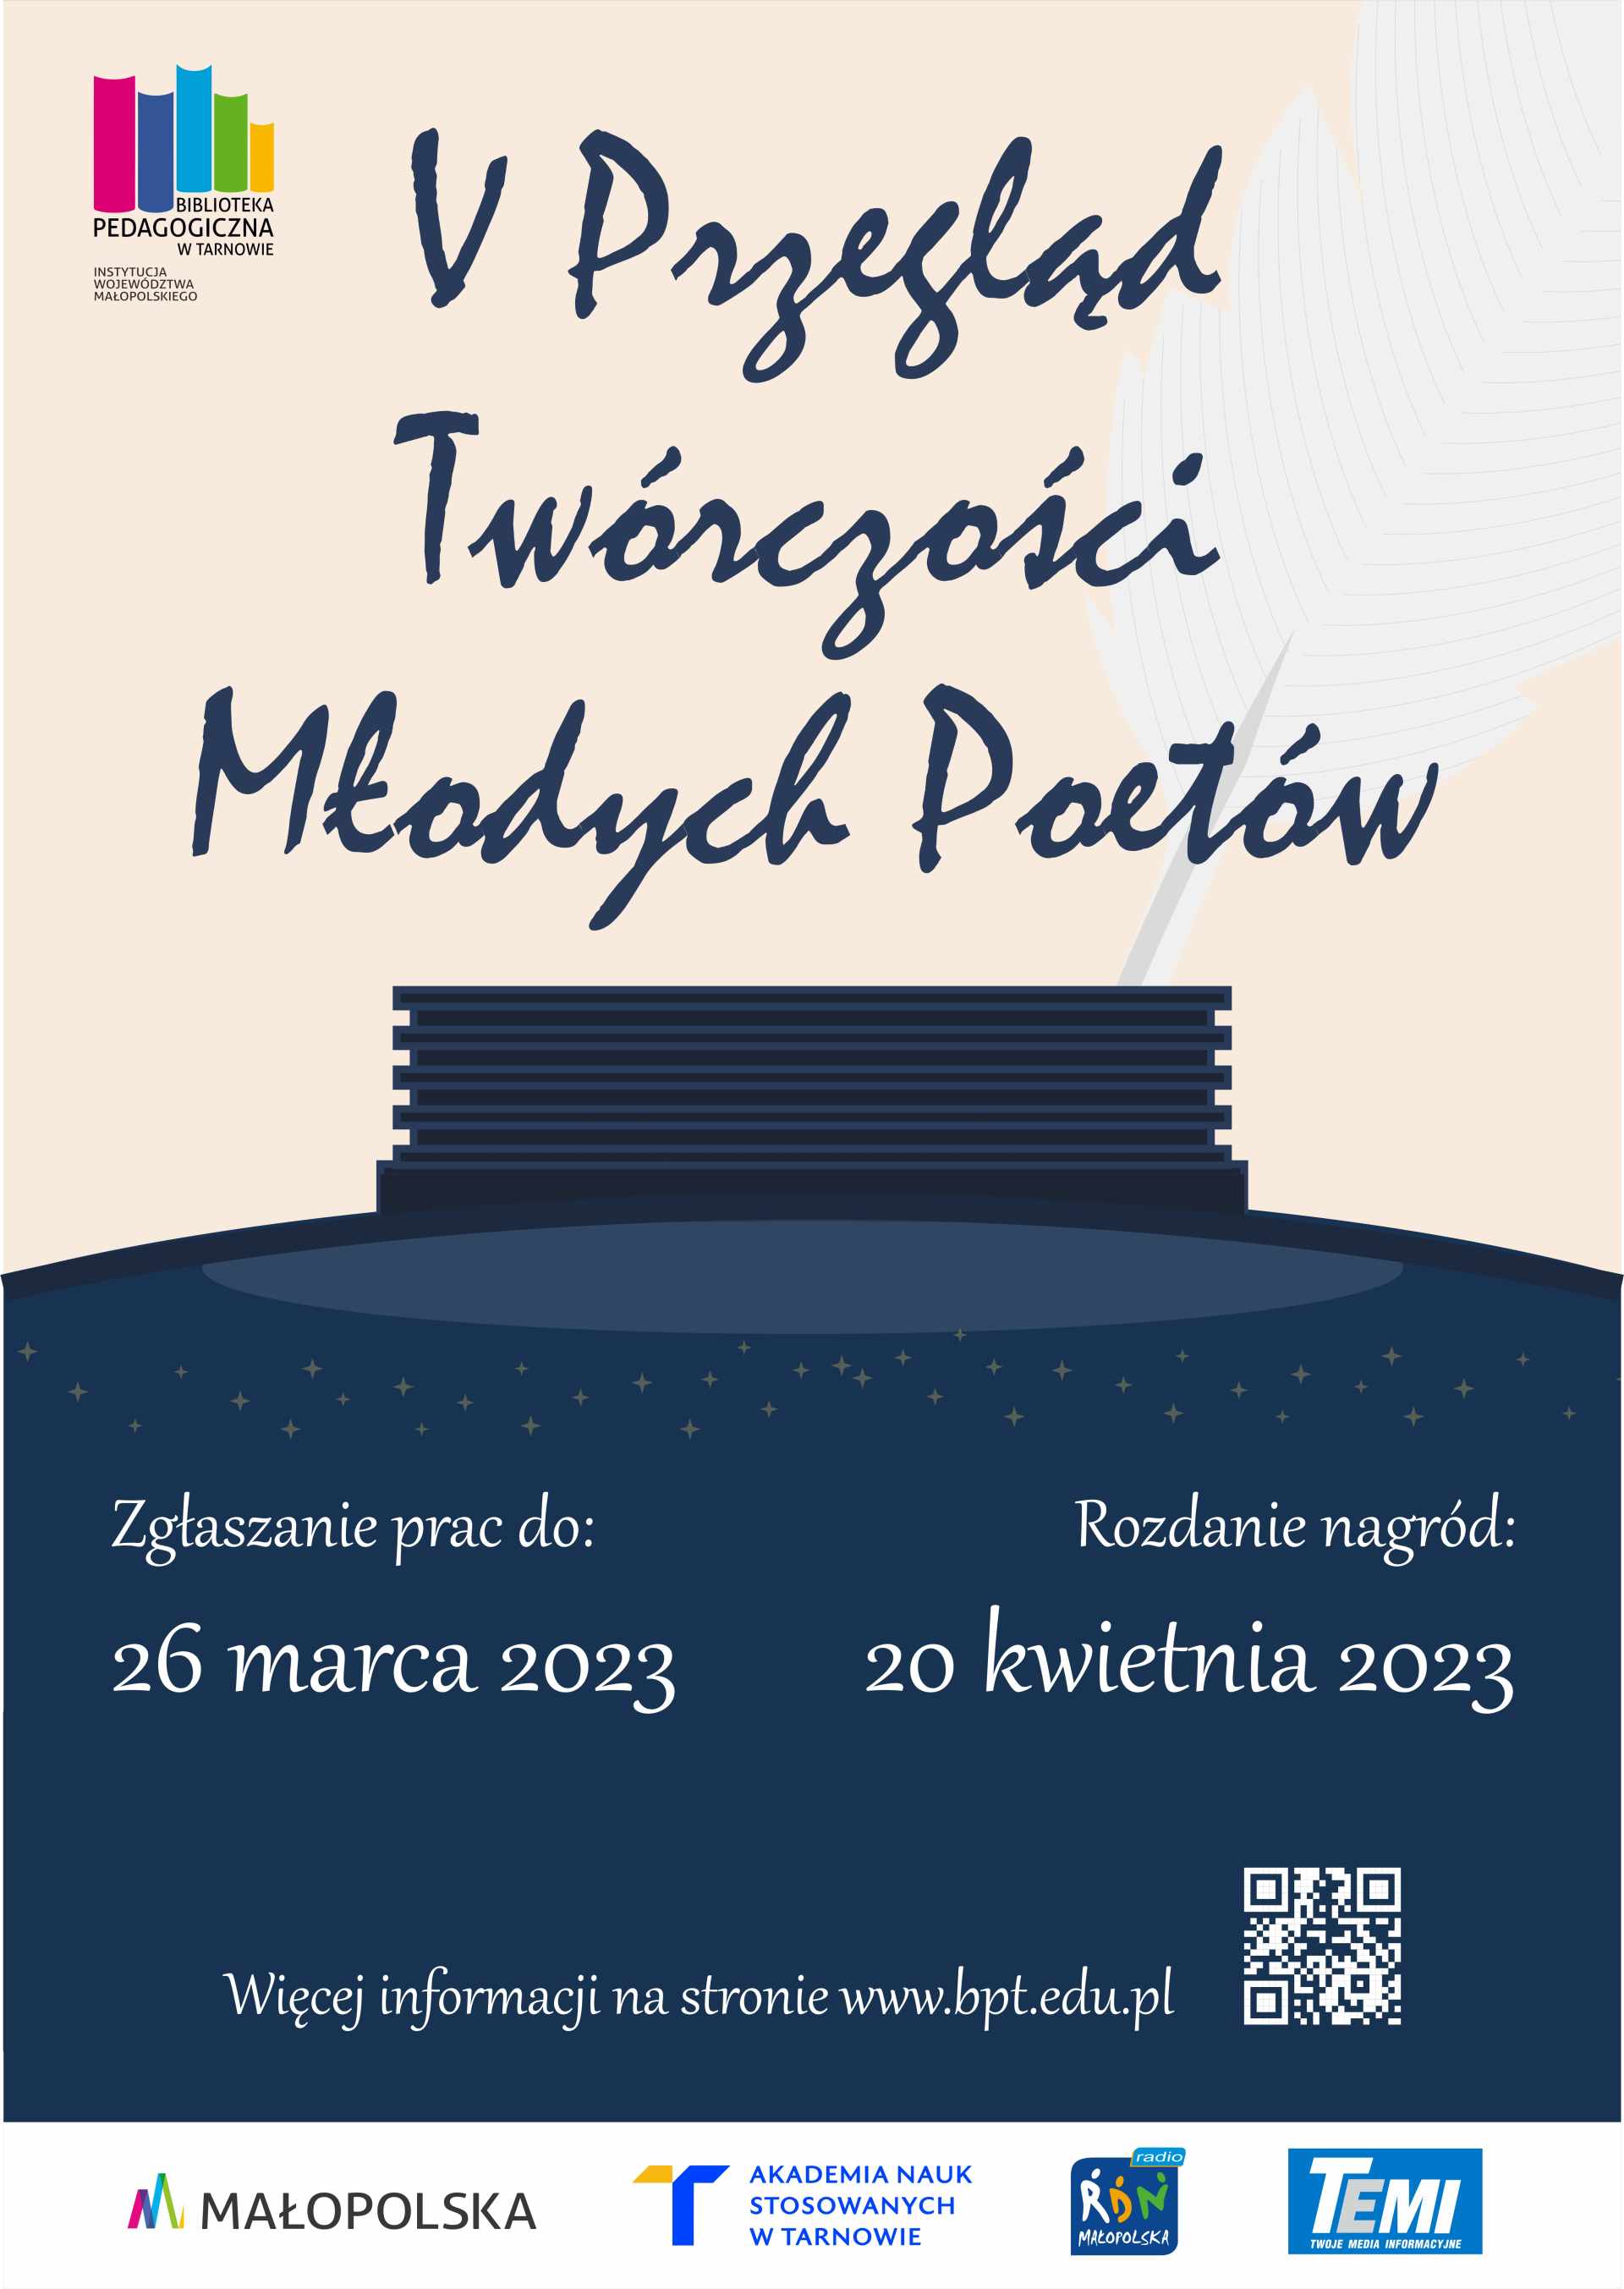 Plakat promujący V Przegląd Twórczości Młodych Poetów